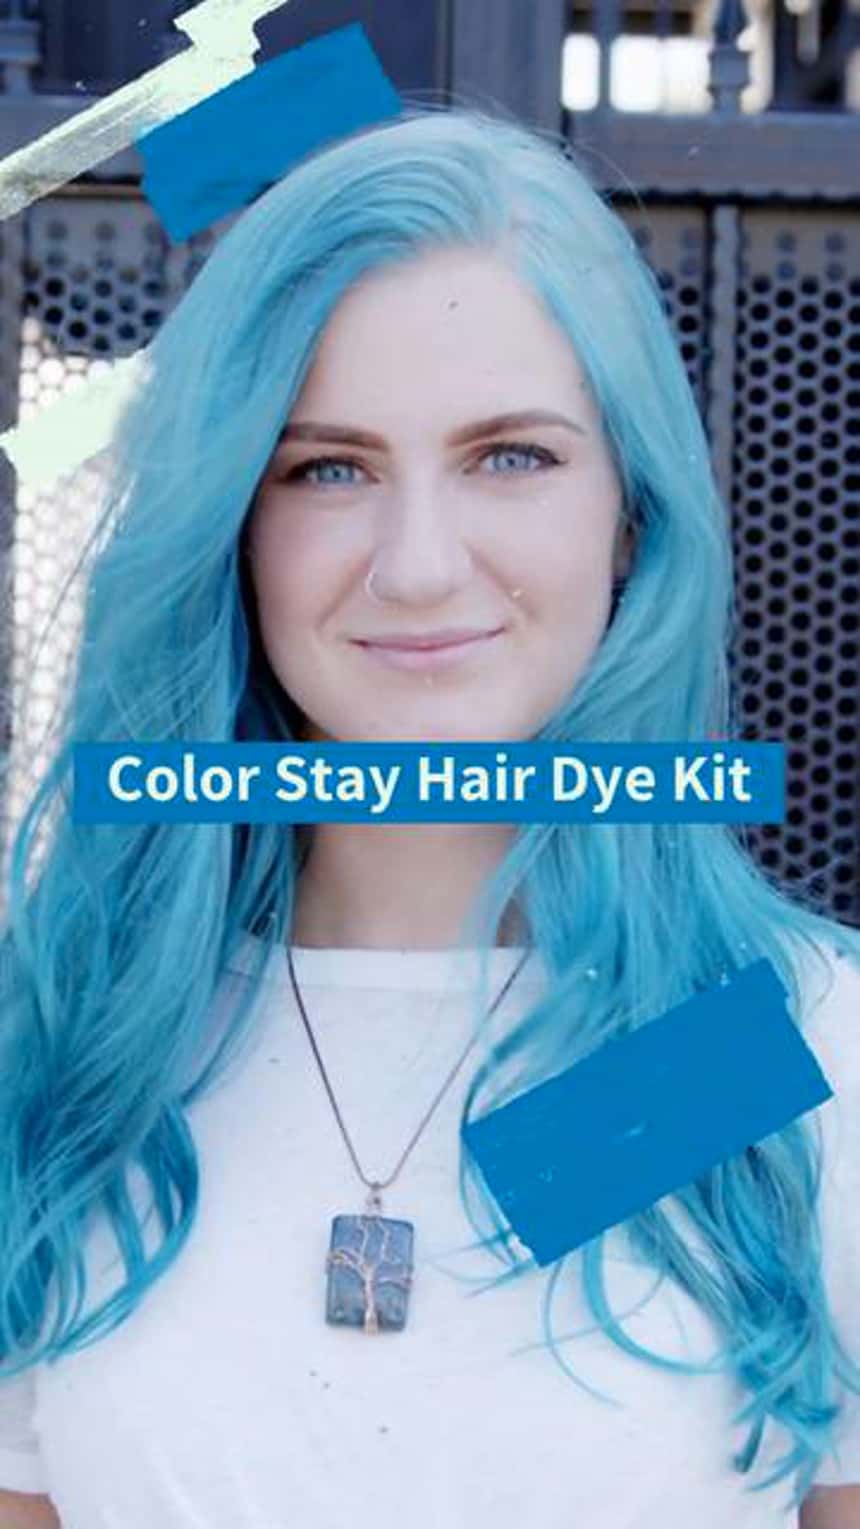 Demostración de un producto en TikTok de una persona con el pelo azul. El texto de la imagen dice: Color Stay Hair Dye Kit.